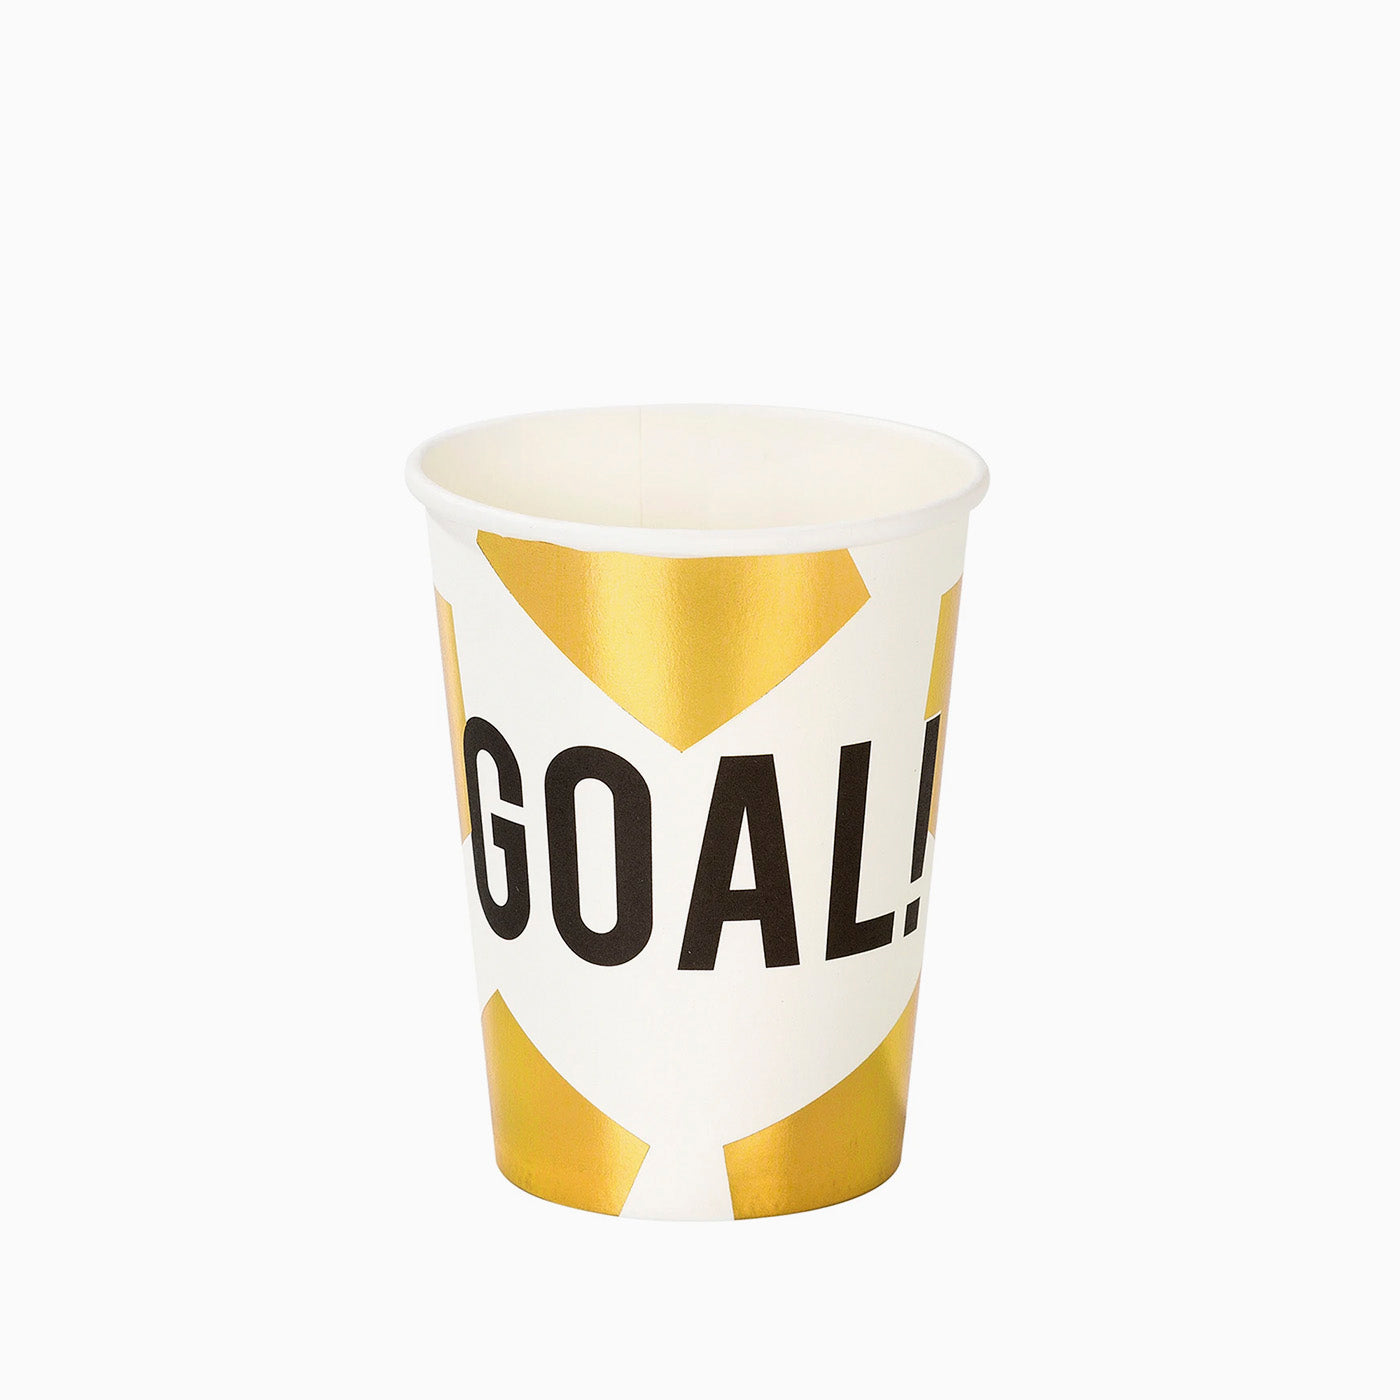 Coppe "Goal!" / Confezione da 12 unità